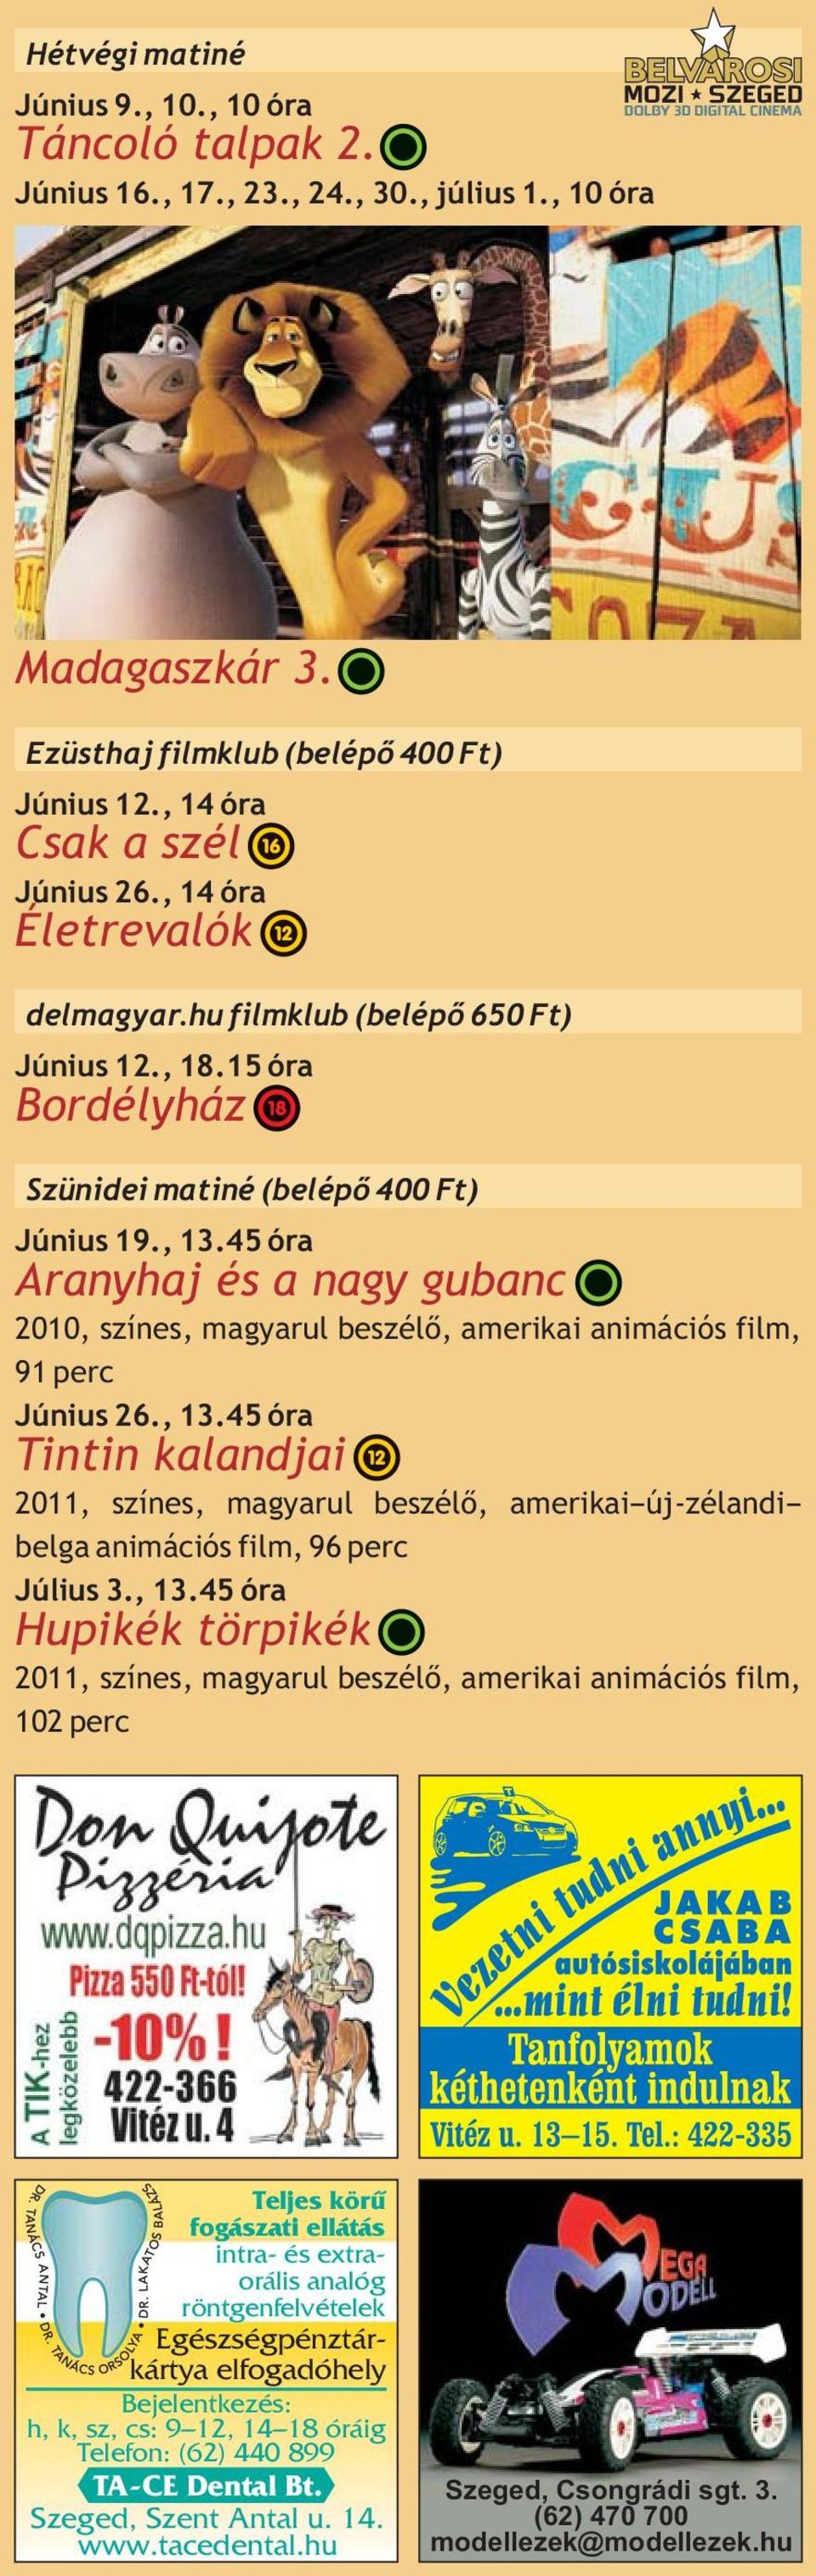 45 óra Aranyhaj és a nagy gubanc 2010, színes, magyarul beszélő, amerikai animációs film, 91 perc Június 26., 13.